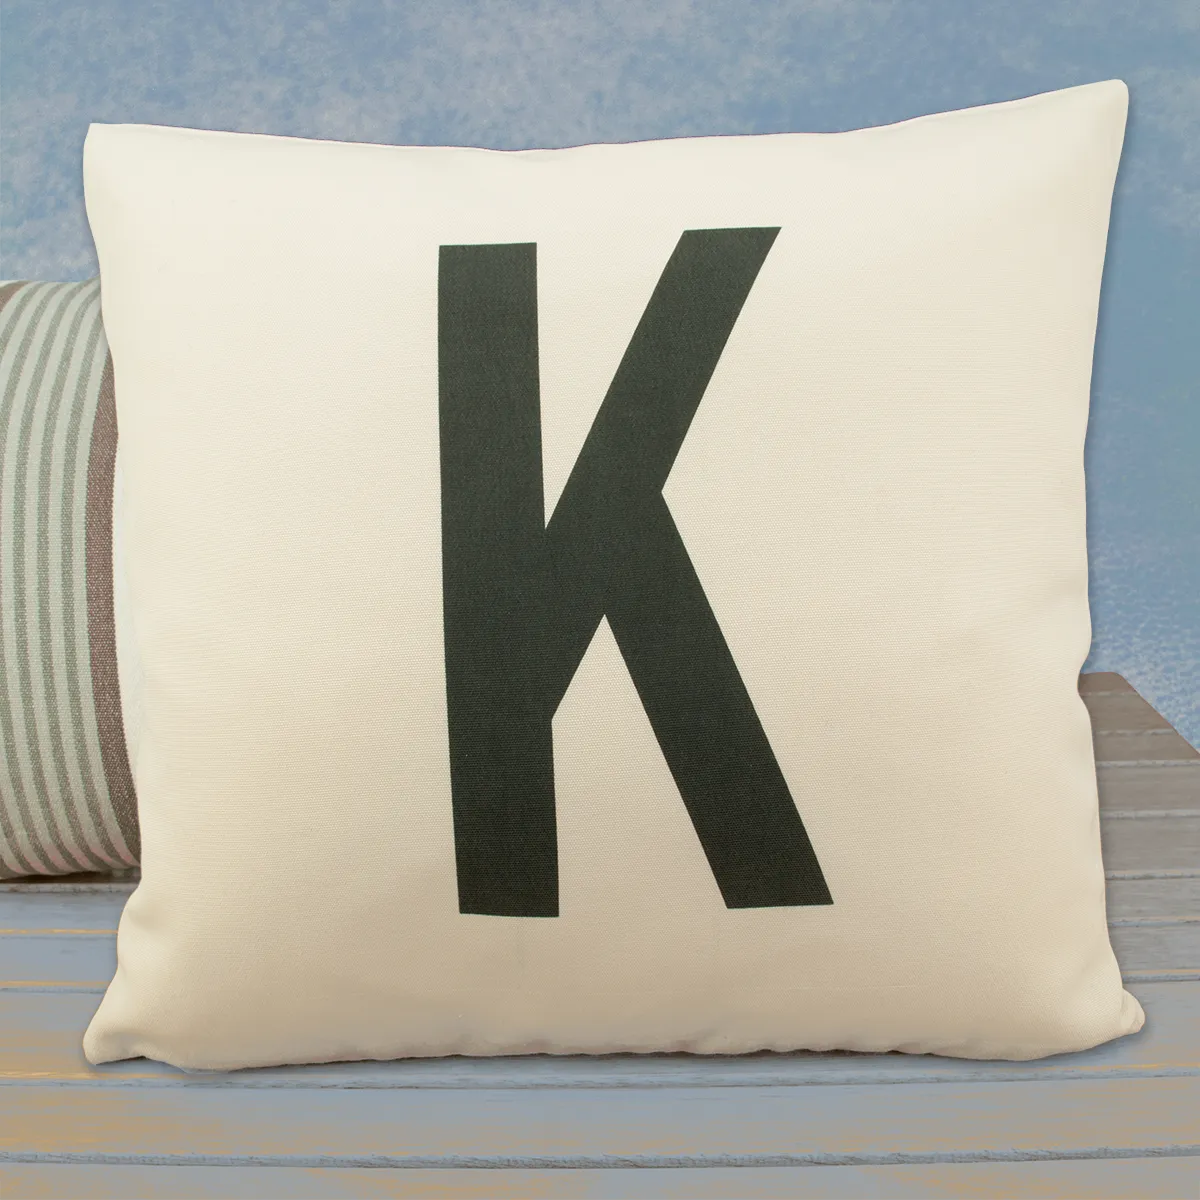 Sofakissen mit Buchstaben K